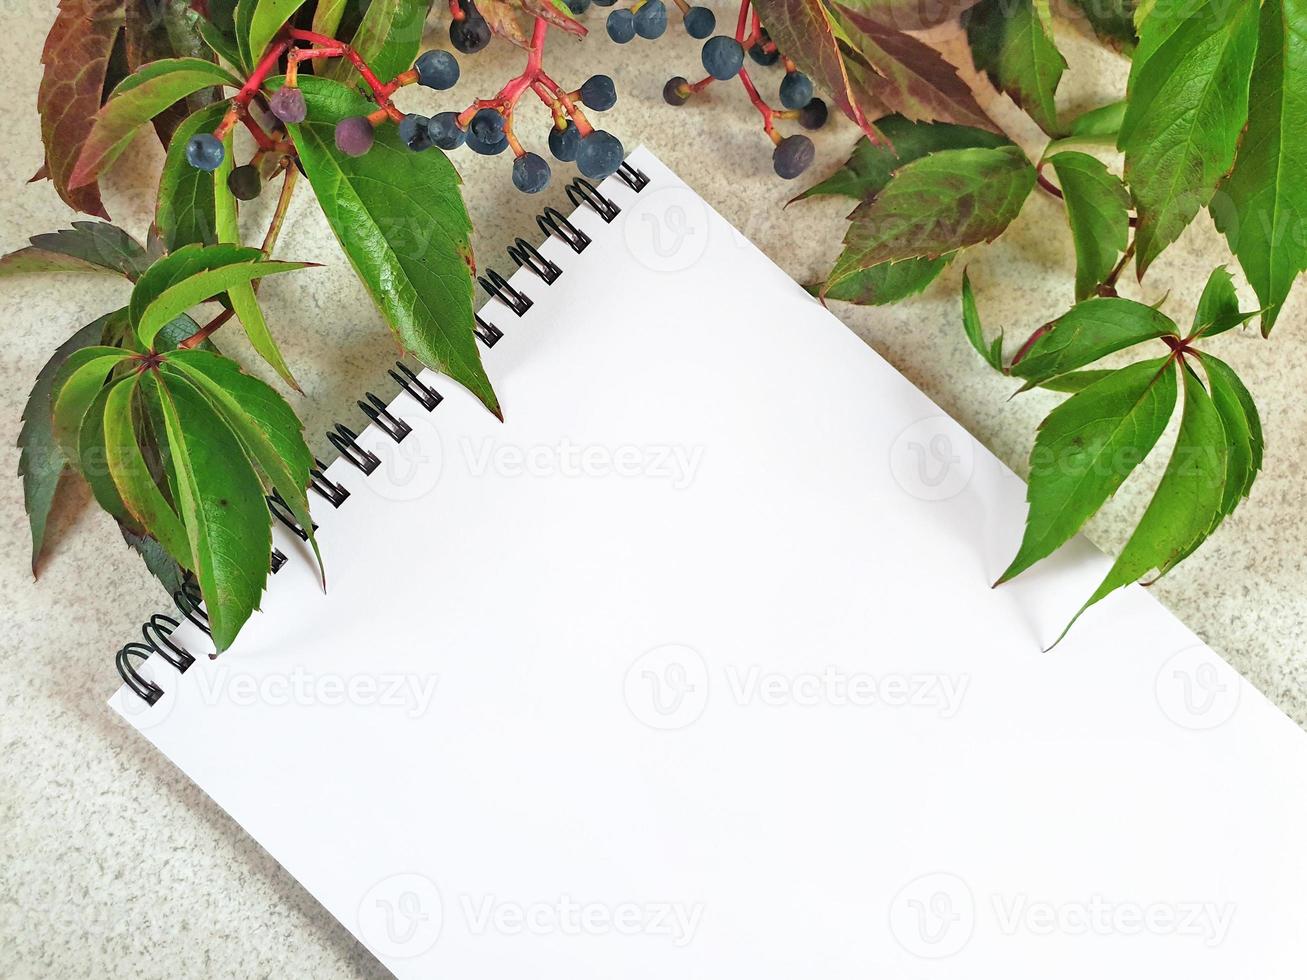 papier blanc vide vierge, bloc-notes en spirale sur une surface de table granuleuse légère avec une branche de raisin sauvage au-dessus. feuilles vertes de raisin vierge avec des baies bleu foncé. composition diagonale florale d'automne. photo